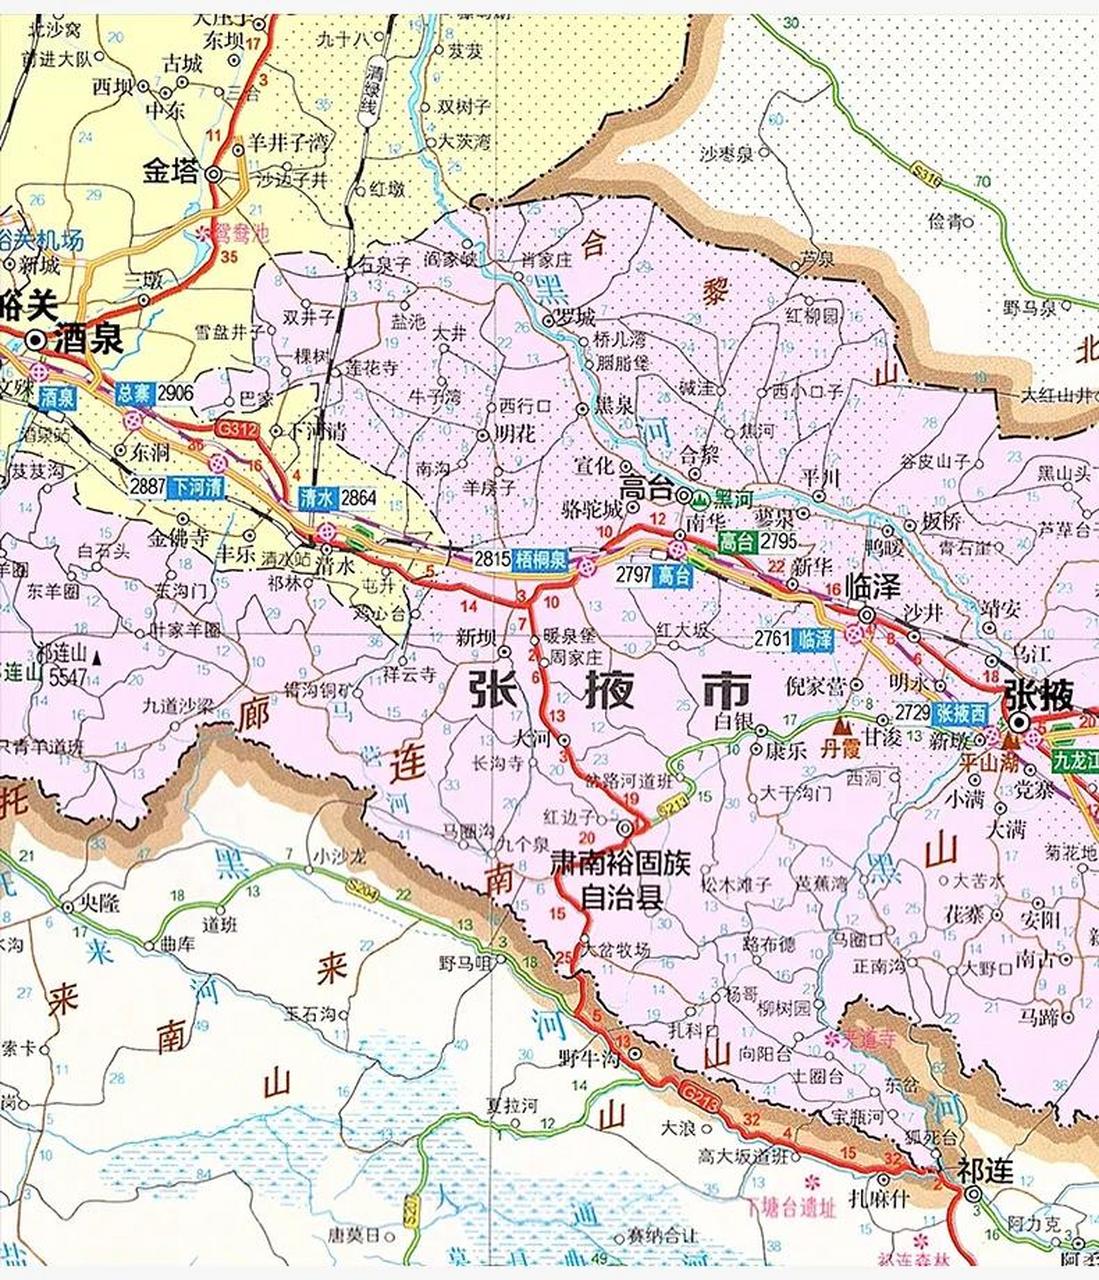 张掖市——肃南裕固族自治县——祁连县,这条旅游线路走的是s213省道